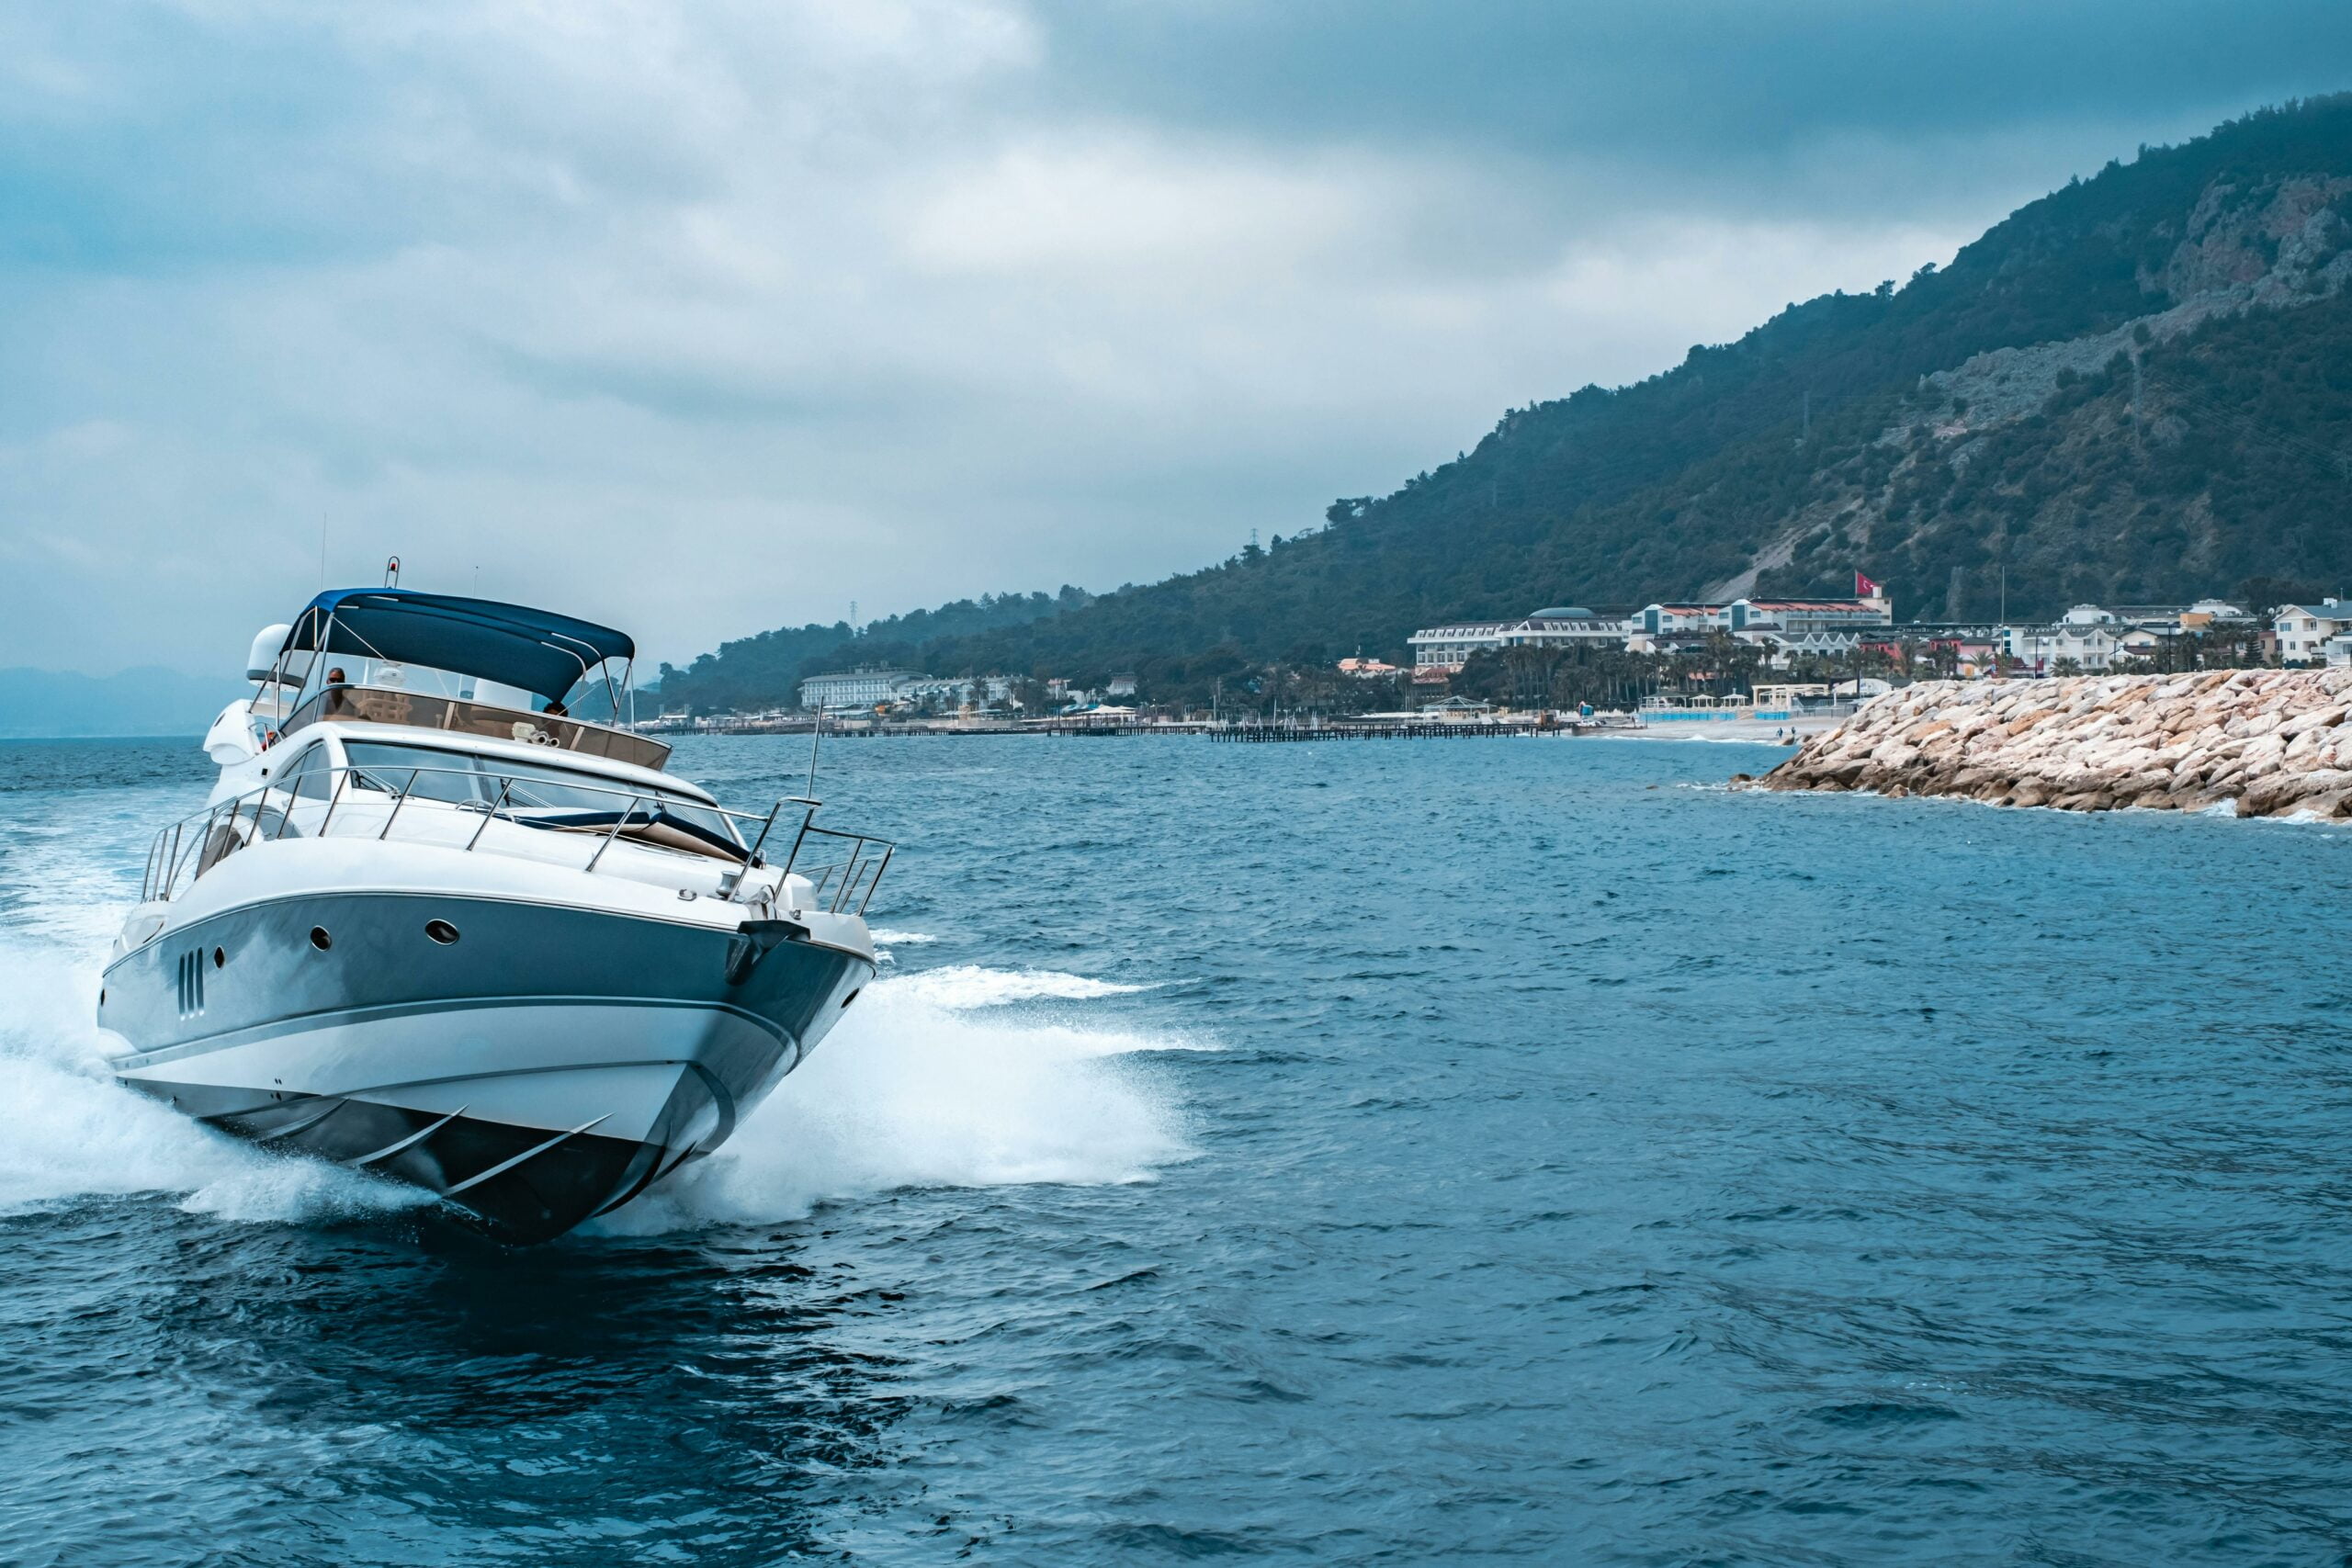 Un yacht naviguant rapidement sur l'eau près d'une côte montagneuse, projetant une sensation de luxe et d'aventure.